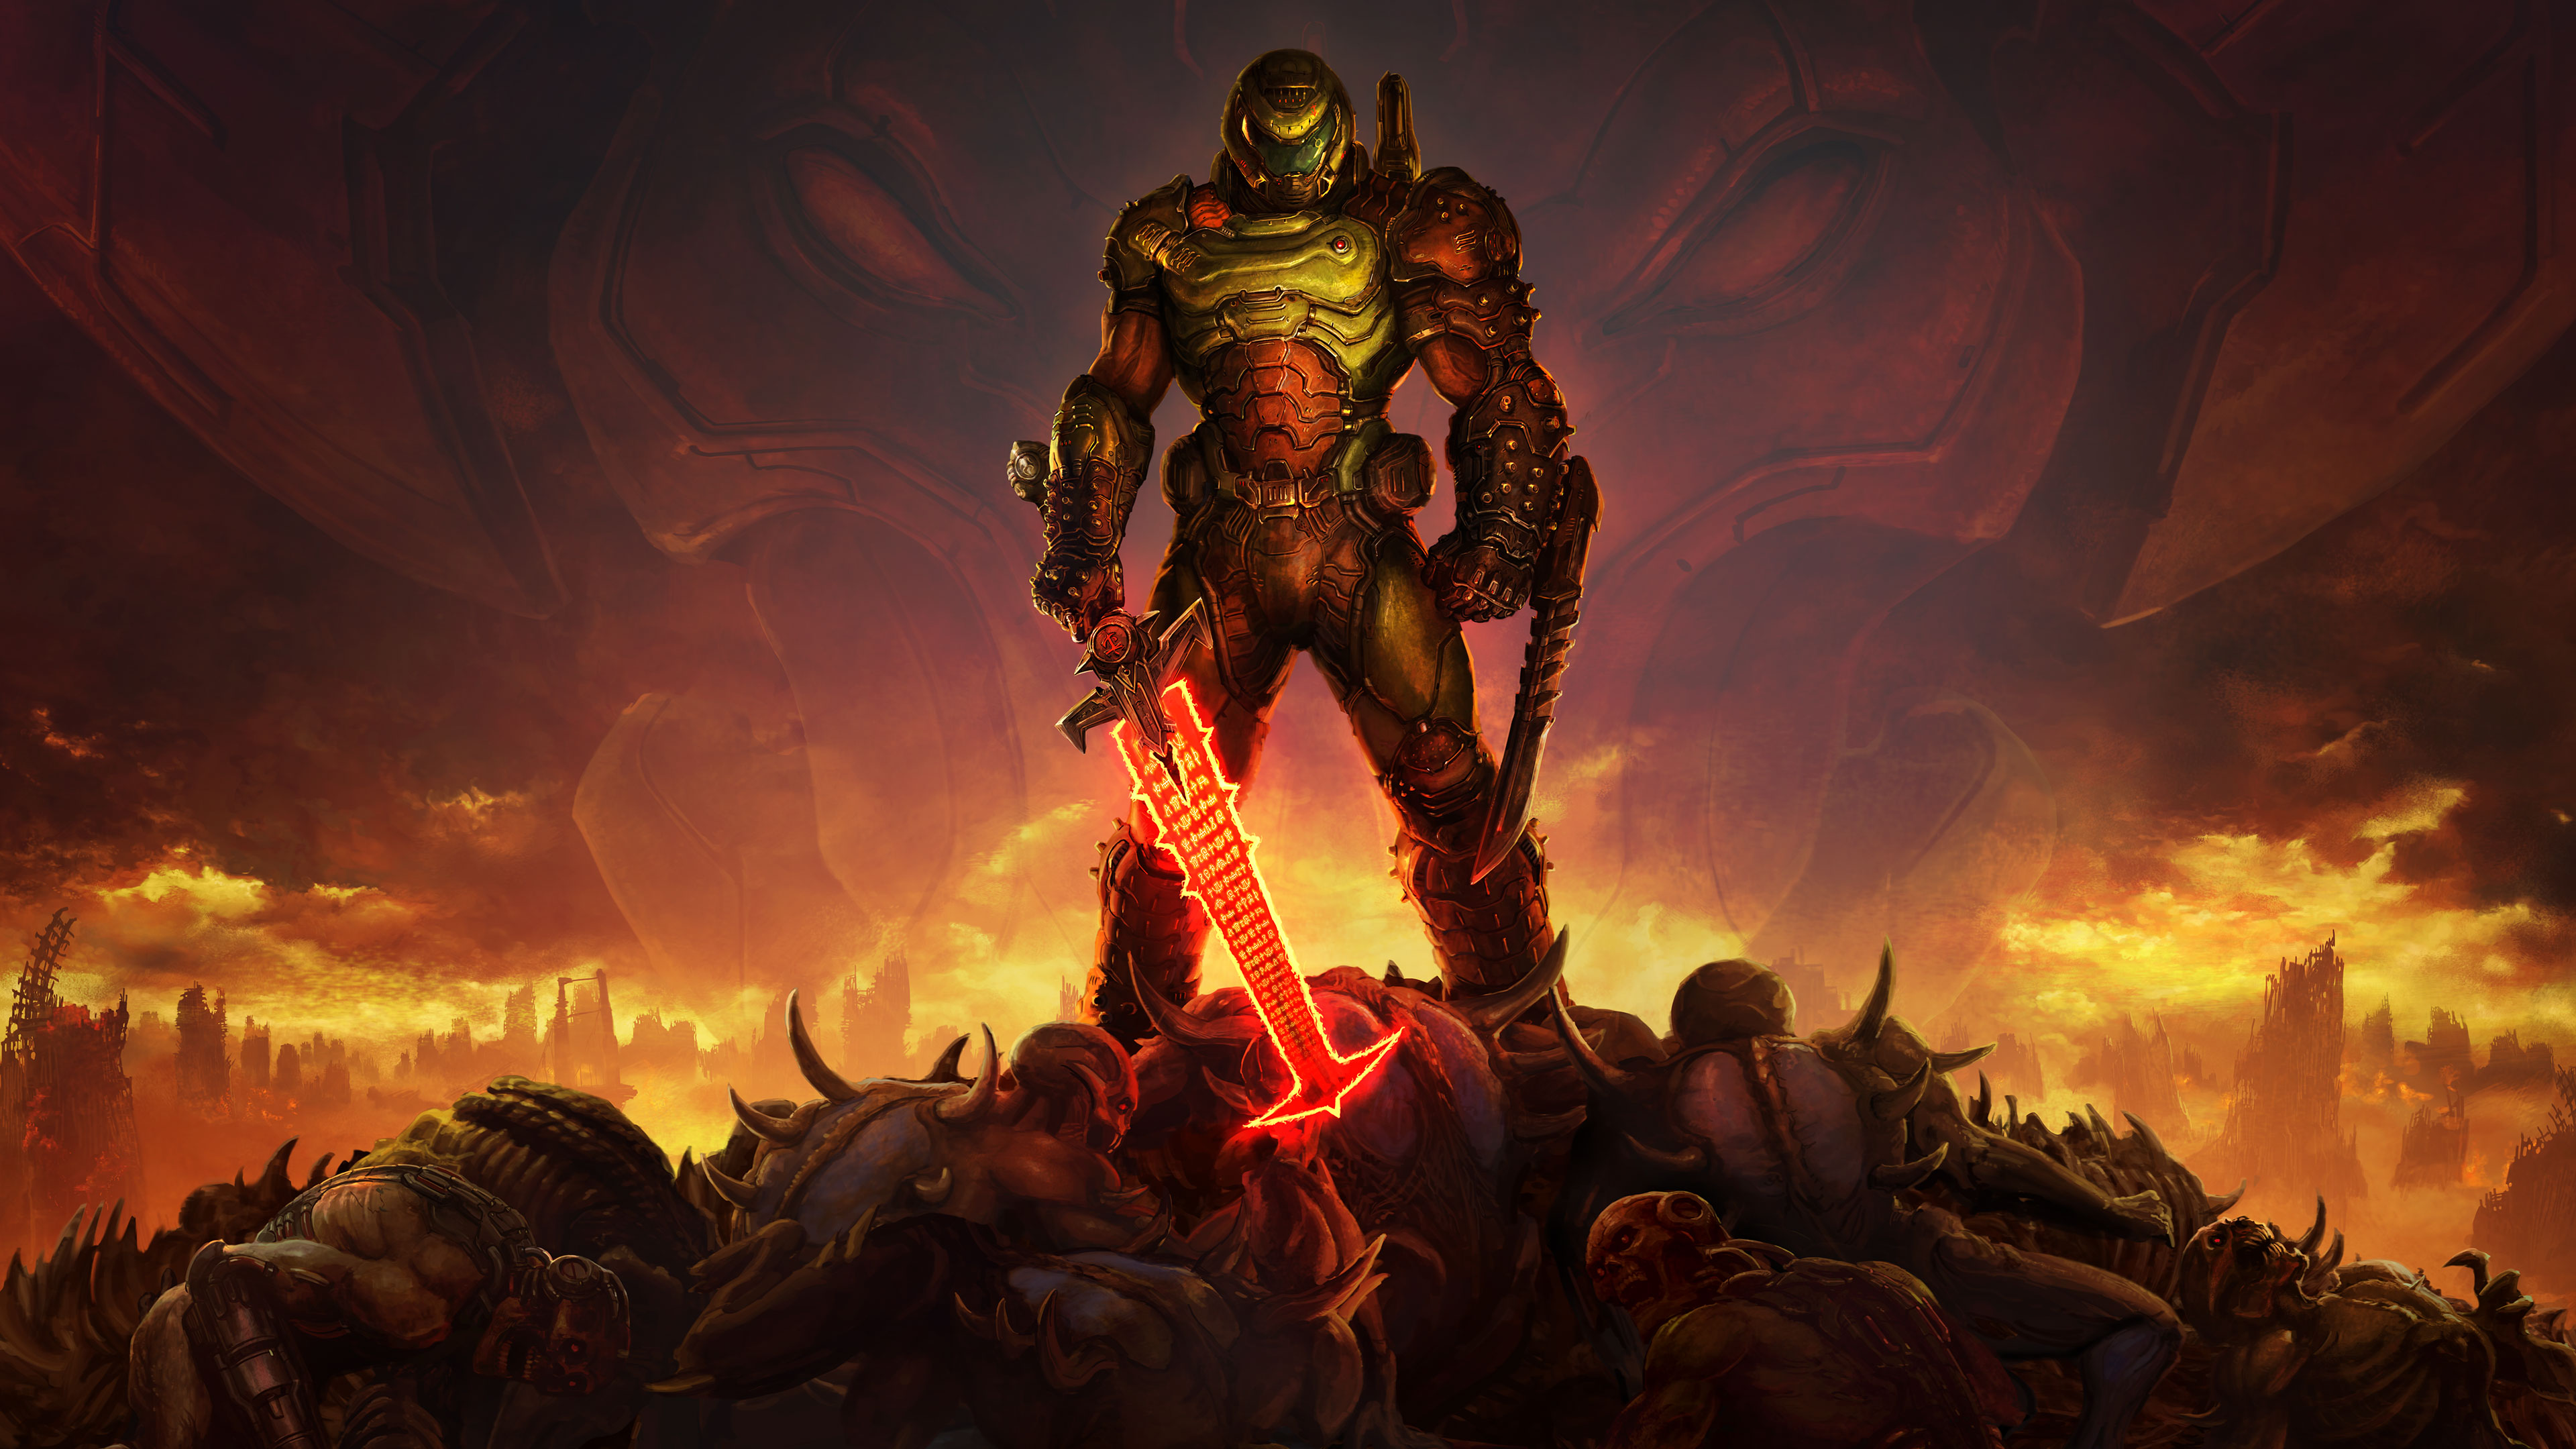 Doom Game Doom Guy DOOM Eternal Doom Slayer Video Game Horror Video Games Sword Demon Frontal View G 3840x2160